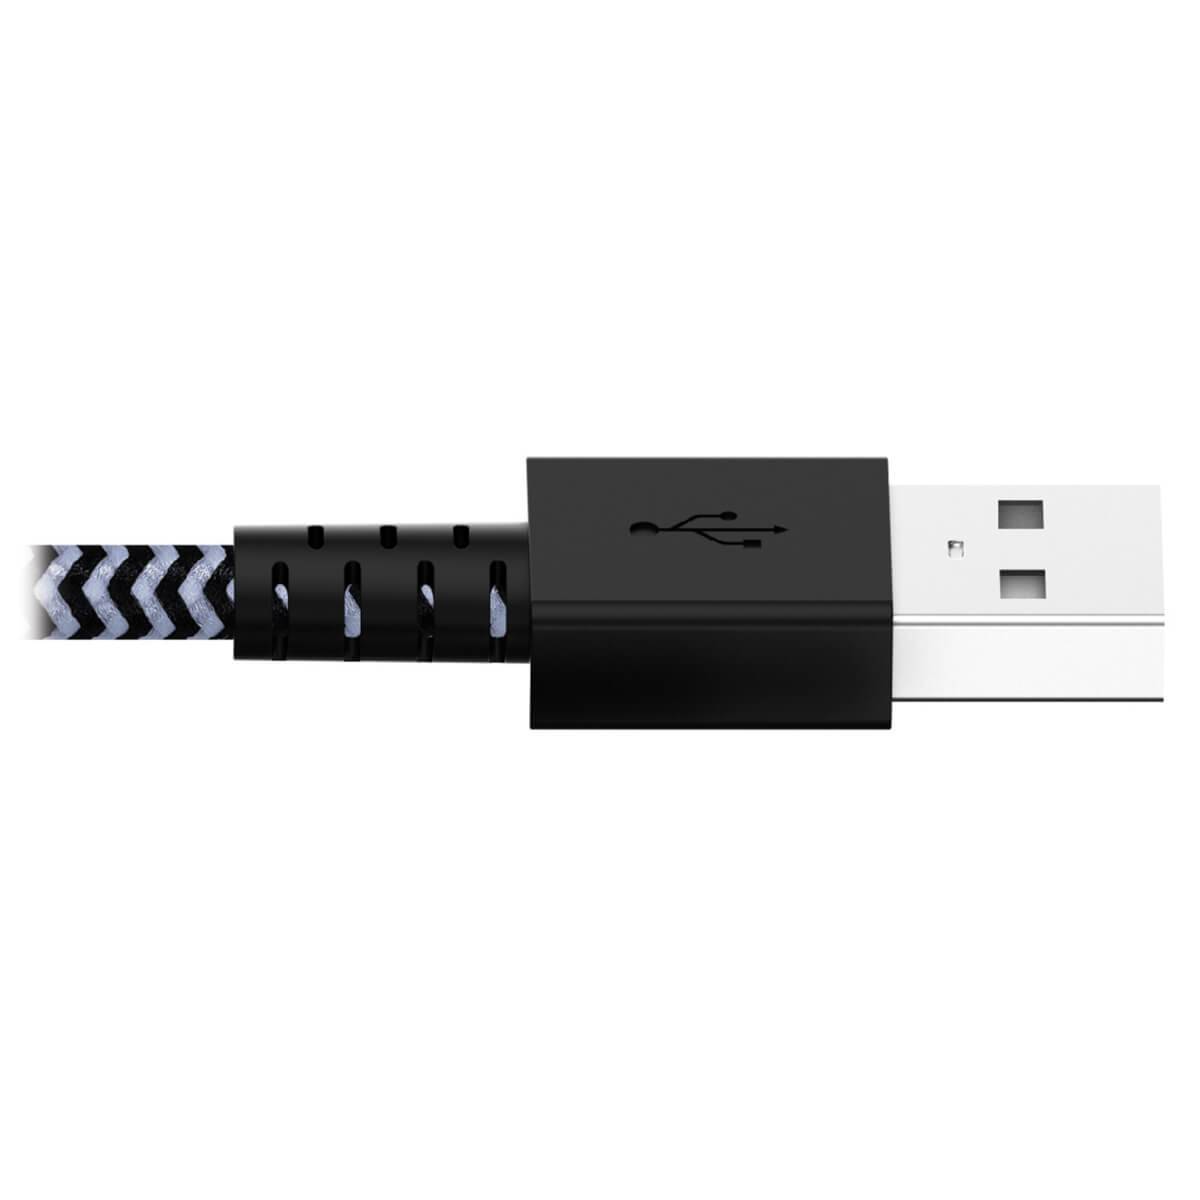 Rca Informatique - image du produit : USB SYNC CHARGE CBL HVY DUTY WITH LIGHTNING CONNECTOR 1.83 M